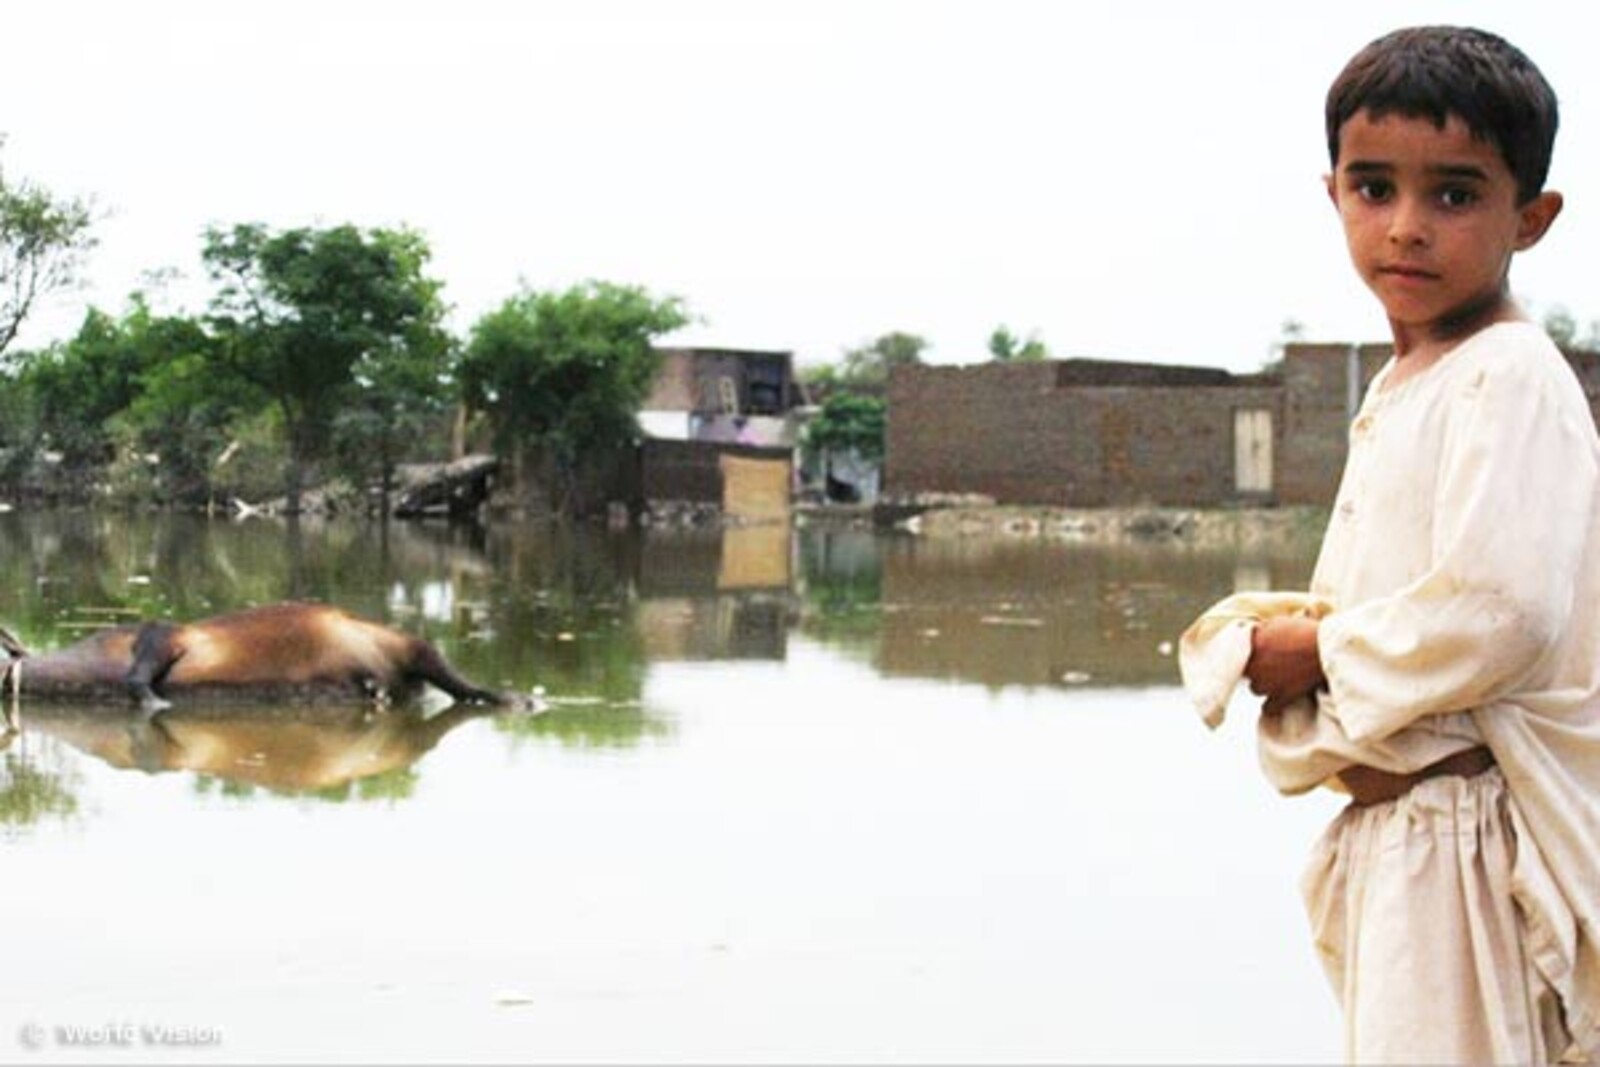 Flut Pakistan: Junge steht neben einem Tierkadaver